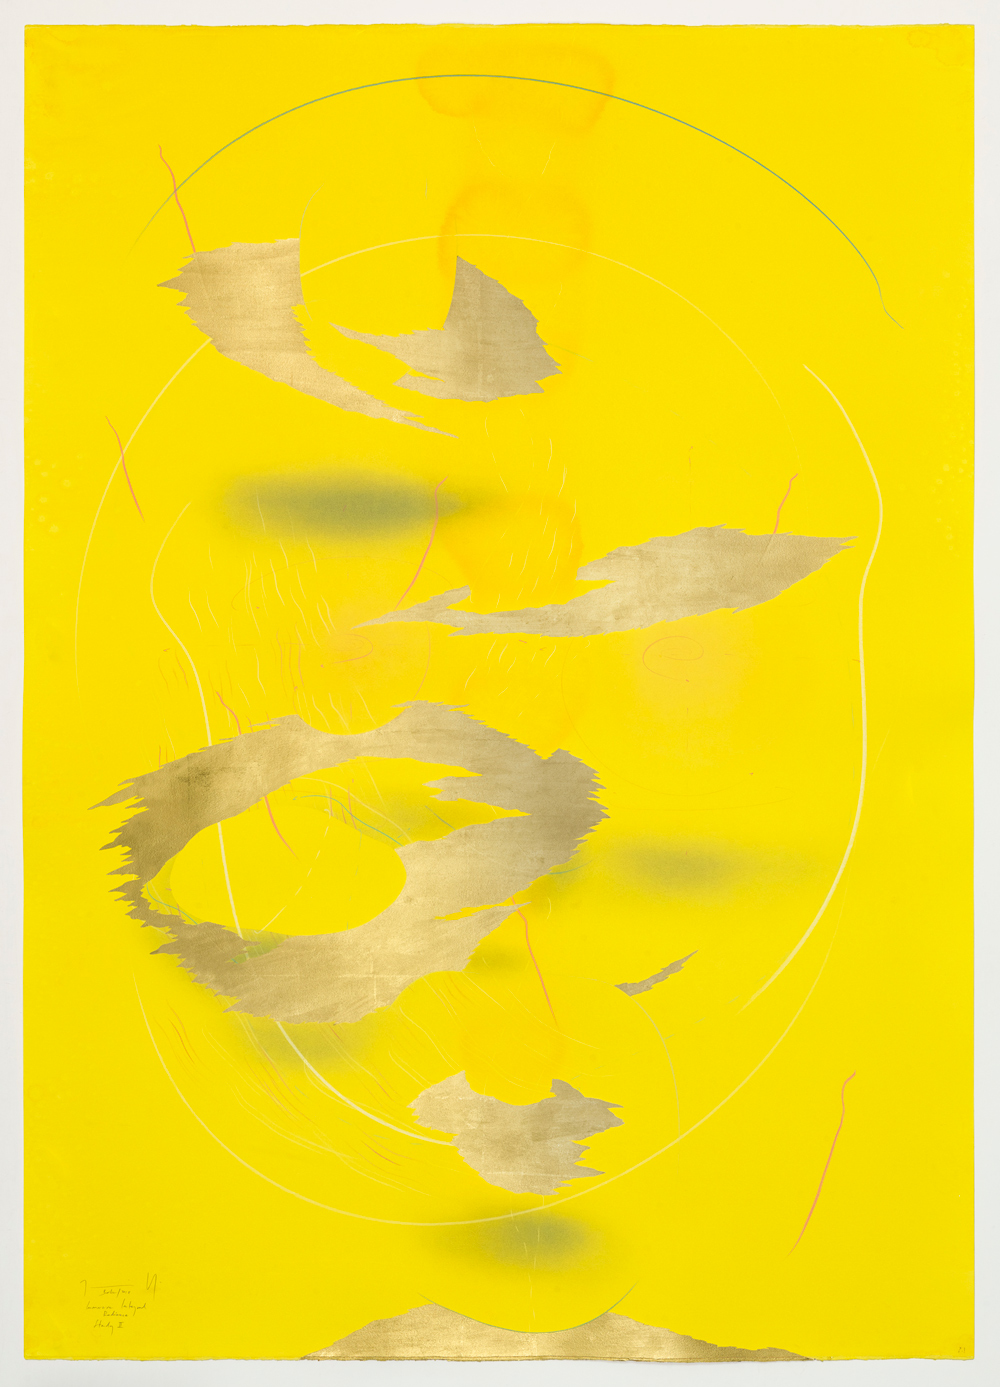 WV 2018-166 Immersive Integral Radiance Study II Jorinde Voigt Berlin 2018 139,5 x 99,5 cm Tusche, Blattgold, Pastell, Ölkreide, Graphit auf Papier Unikat Signiert